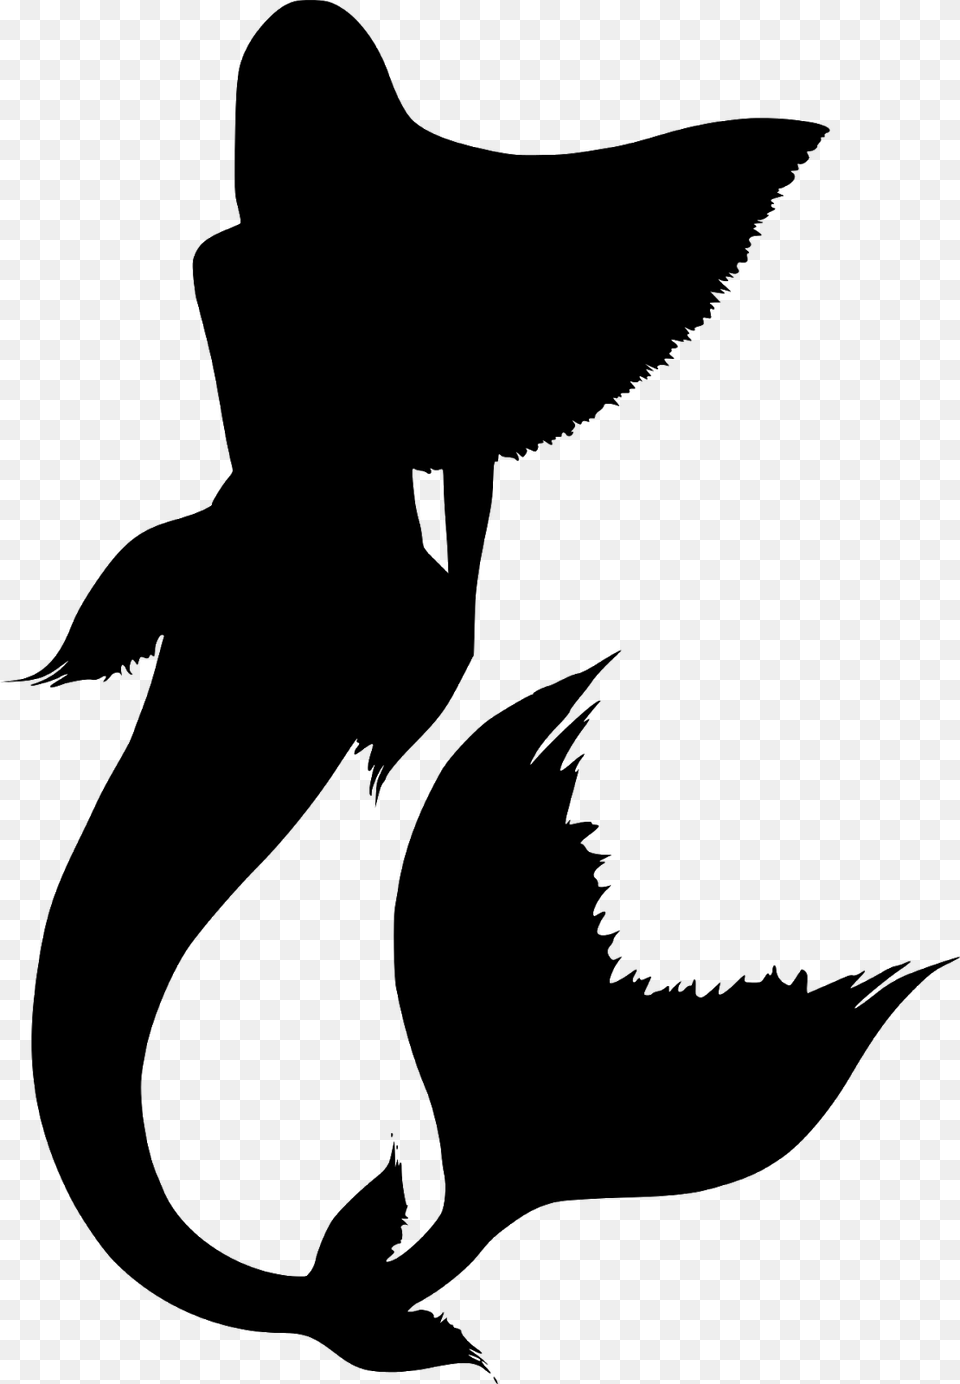 Silueta Cola De Sirena Sirena De Vectores Mermaid Silhouette No Background, Gray Free Png